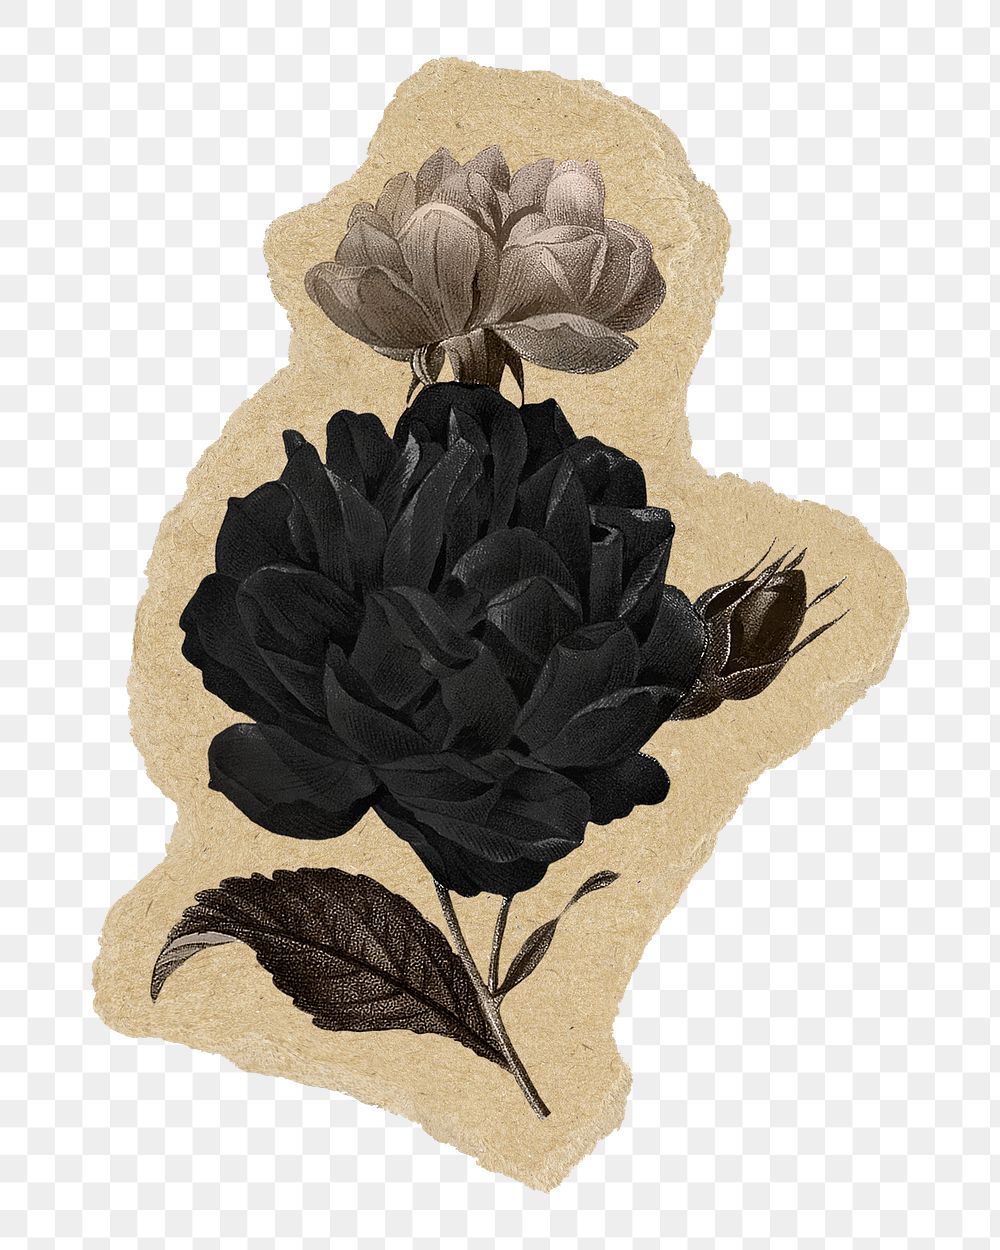 Black flower png sticker, torn paper transparent background